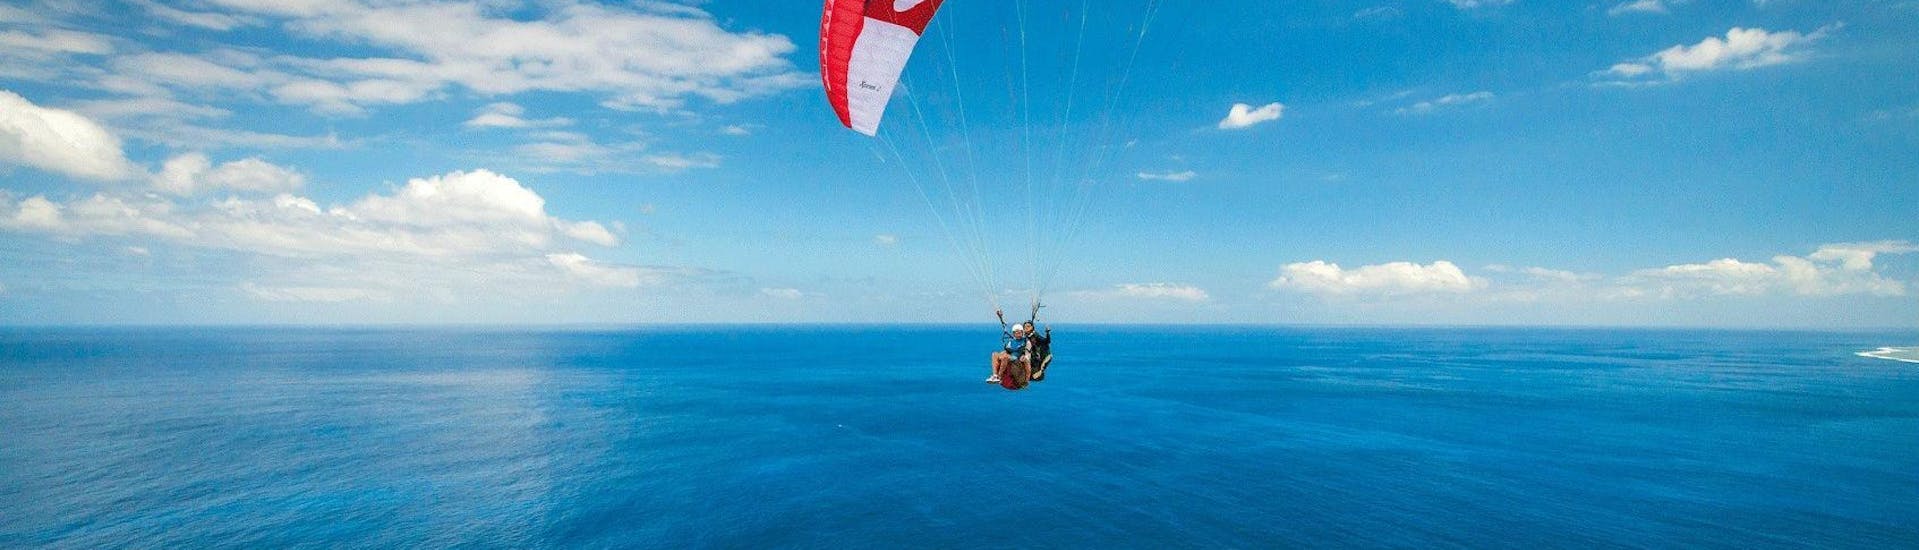 Un pilote de parapente d'Addict Parapente survole la baie de Saint-Leu lors d'un vol Parapente Biplace "Sensation".